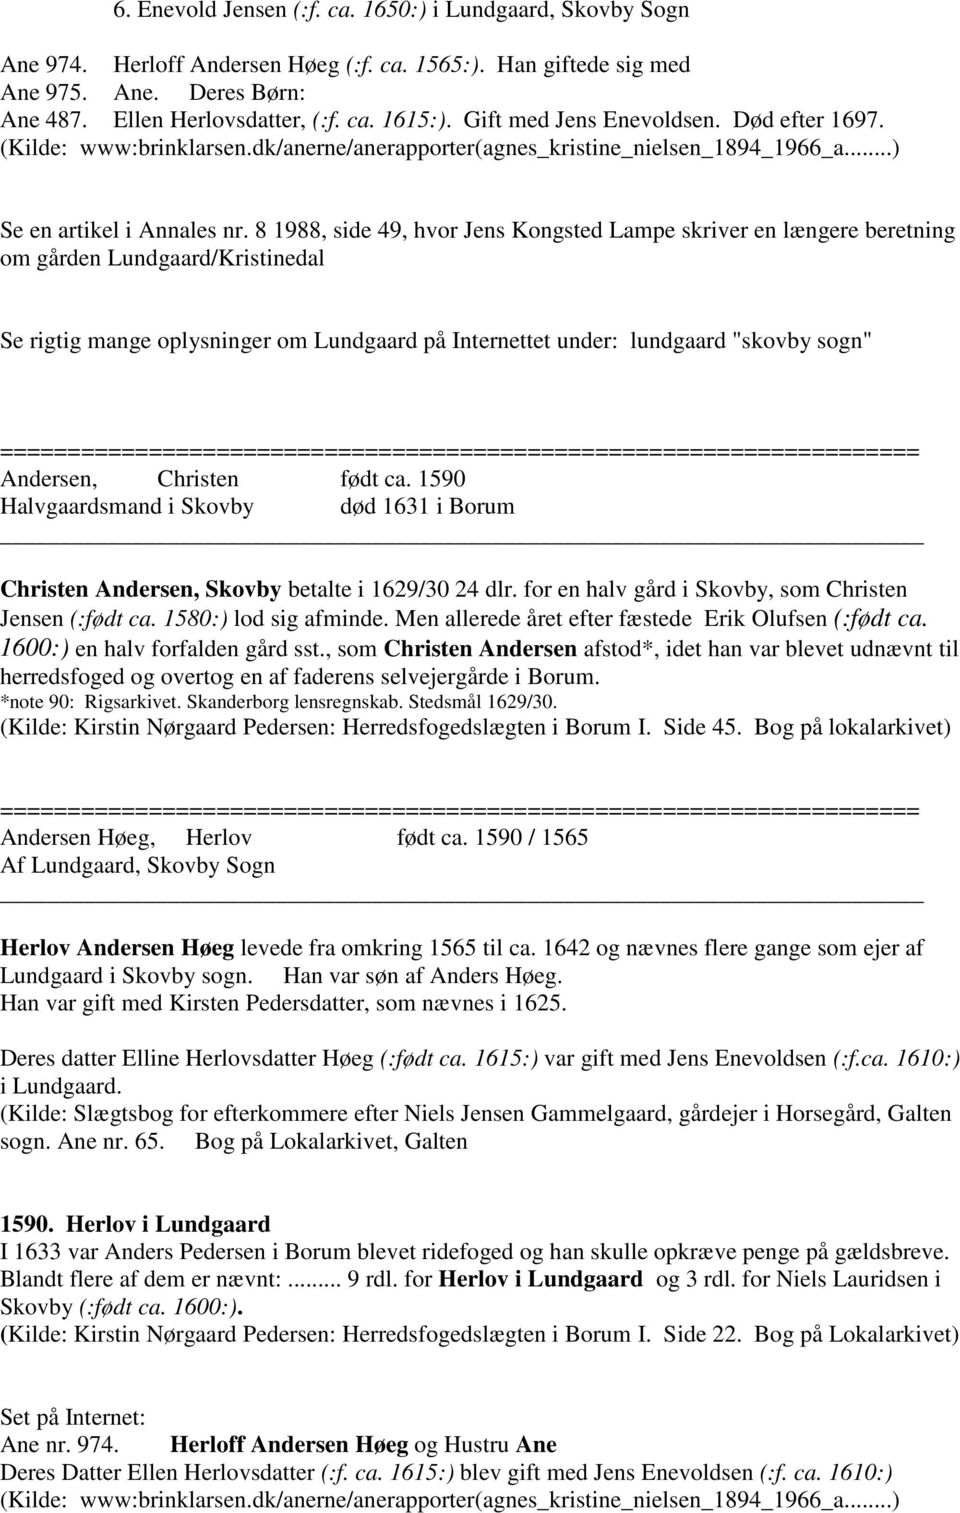 8 1988, side 49, hvor Jens Kongsted Lampe skriver en længere beretning om gården Lundgaard/Kristinedal Se rigtig mange oplysninger om Lundgaard på Internettet under: lundgaard "skovby sogn"